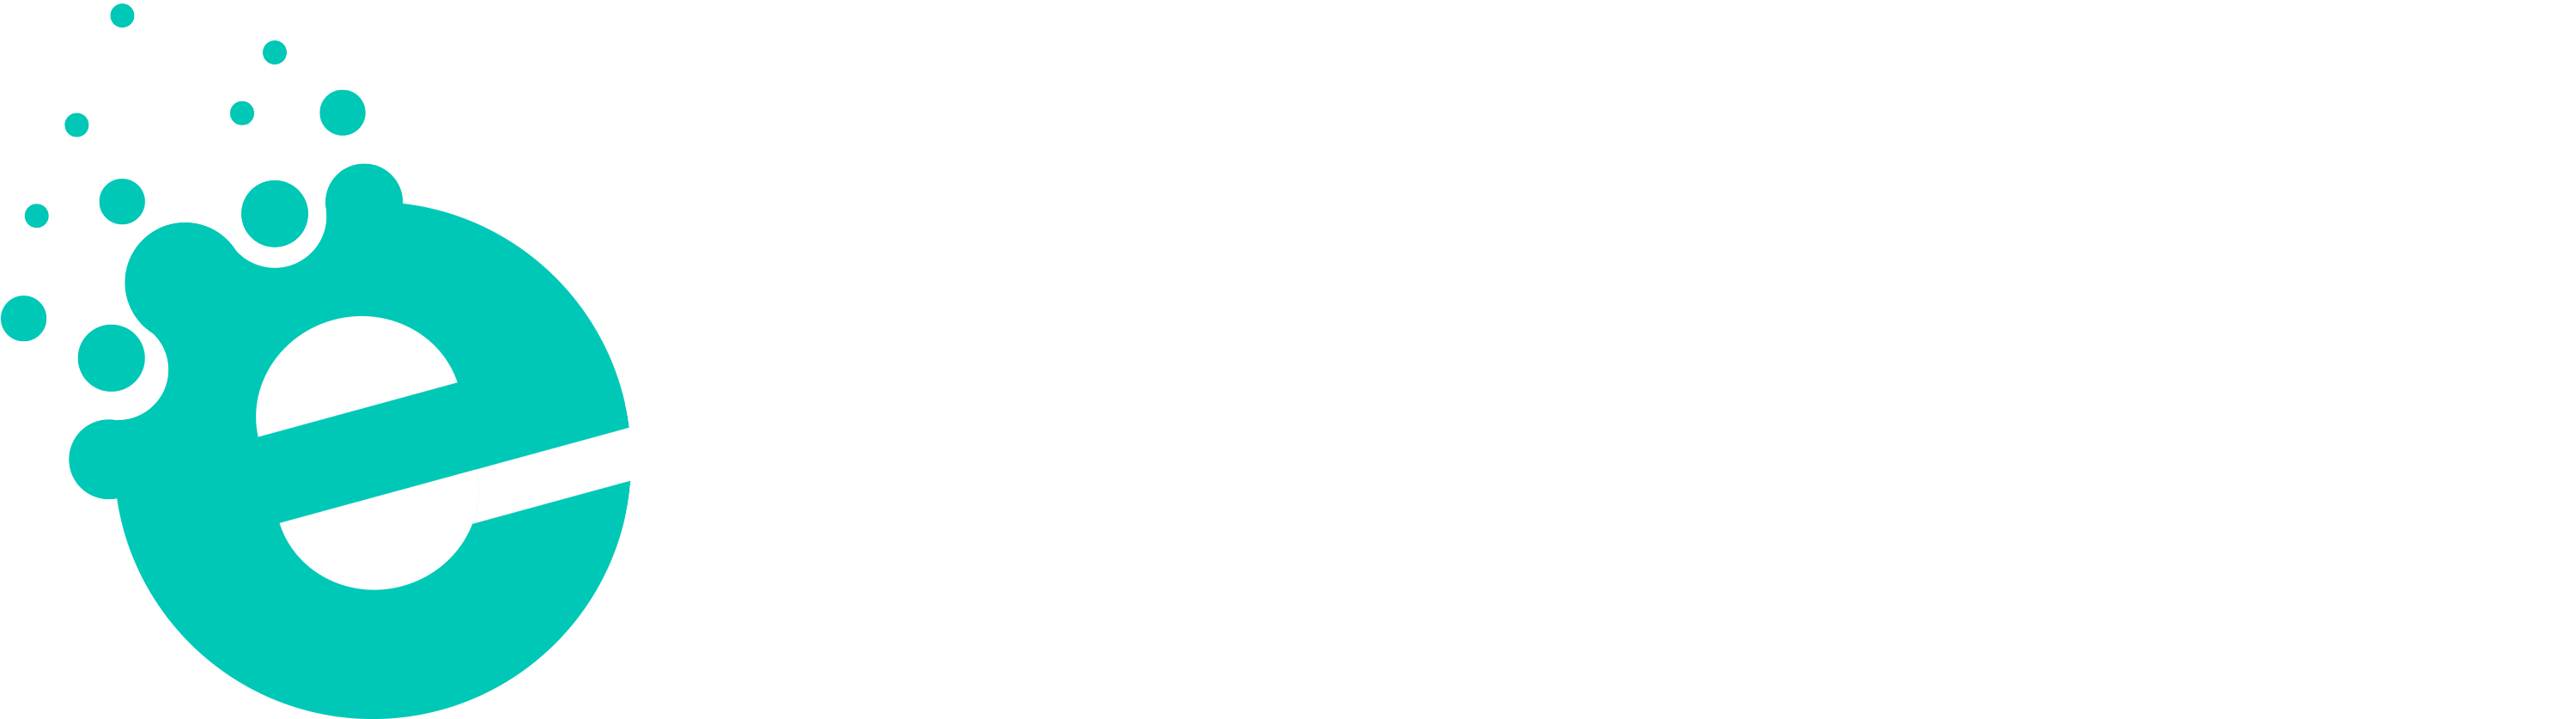 e-konsulenten